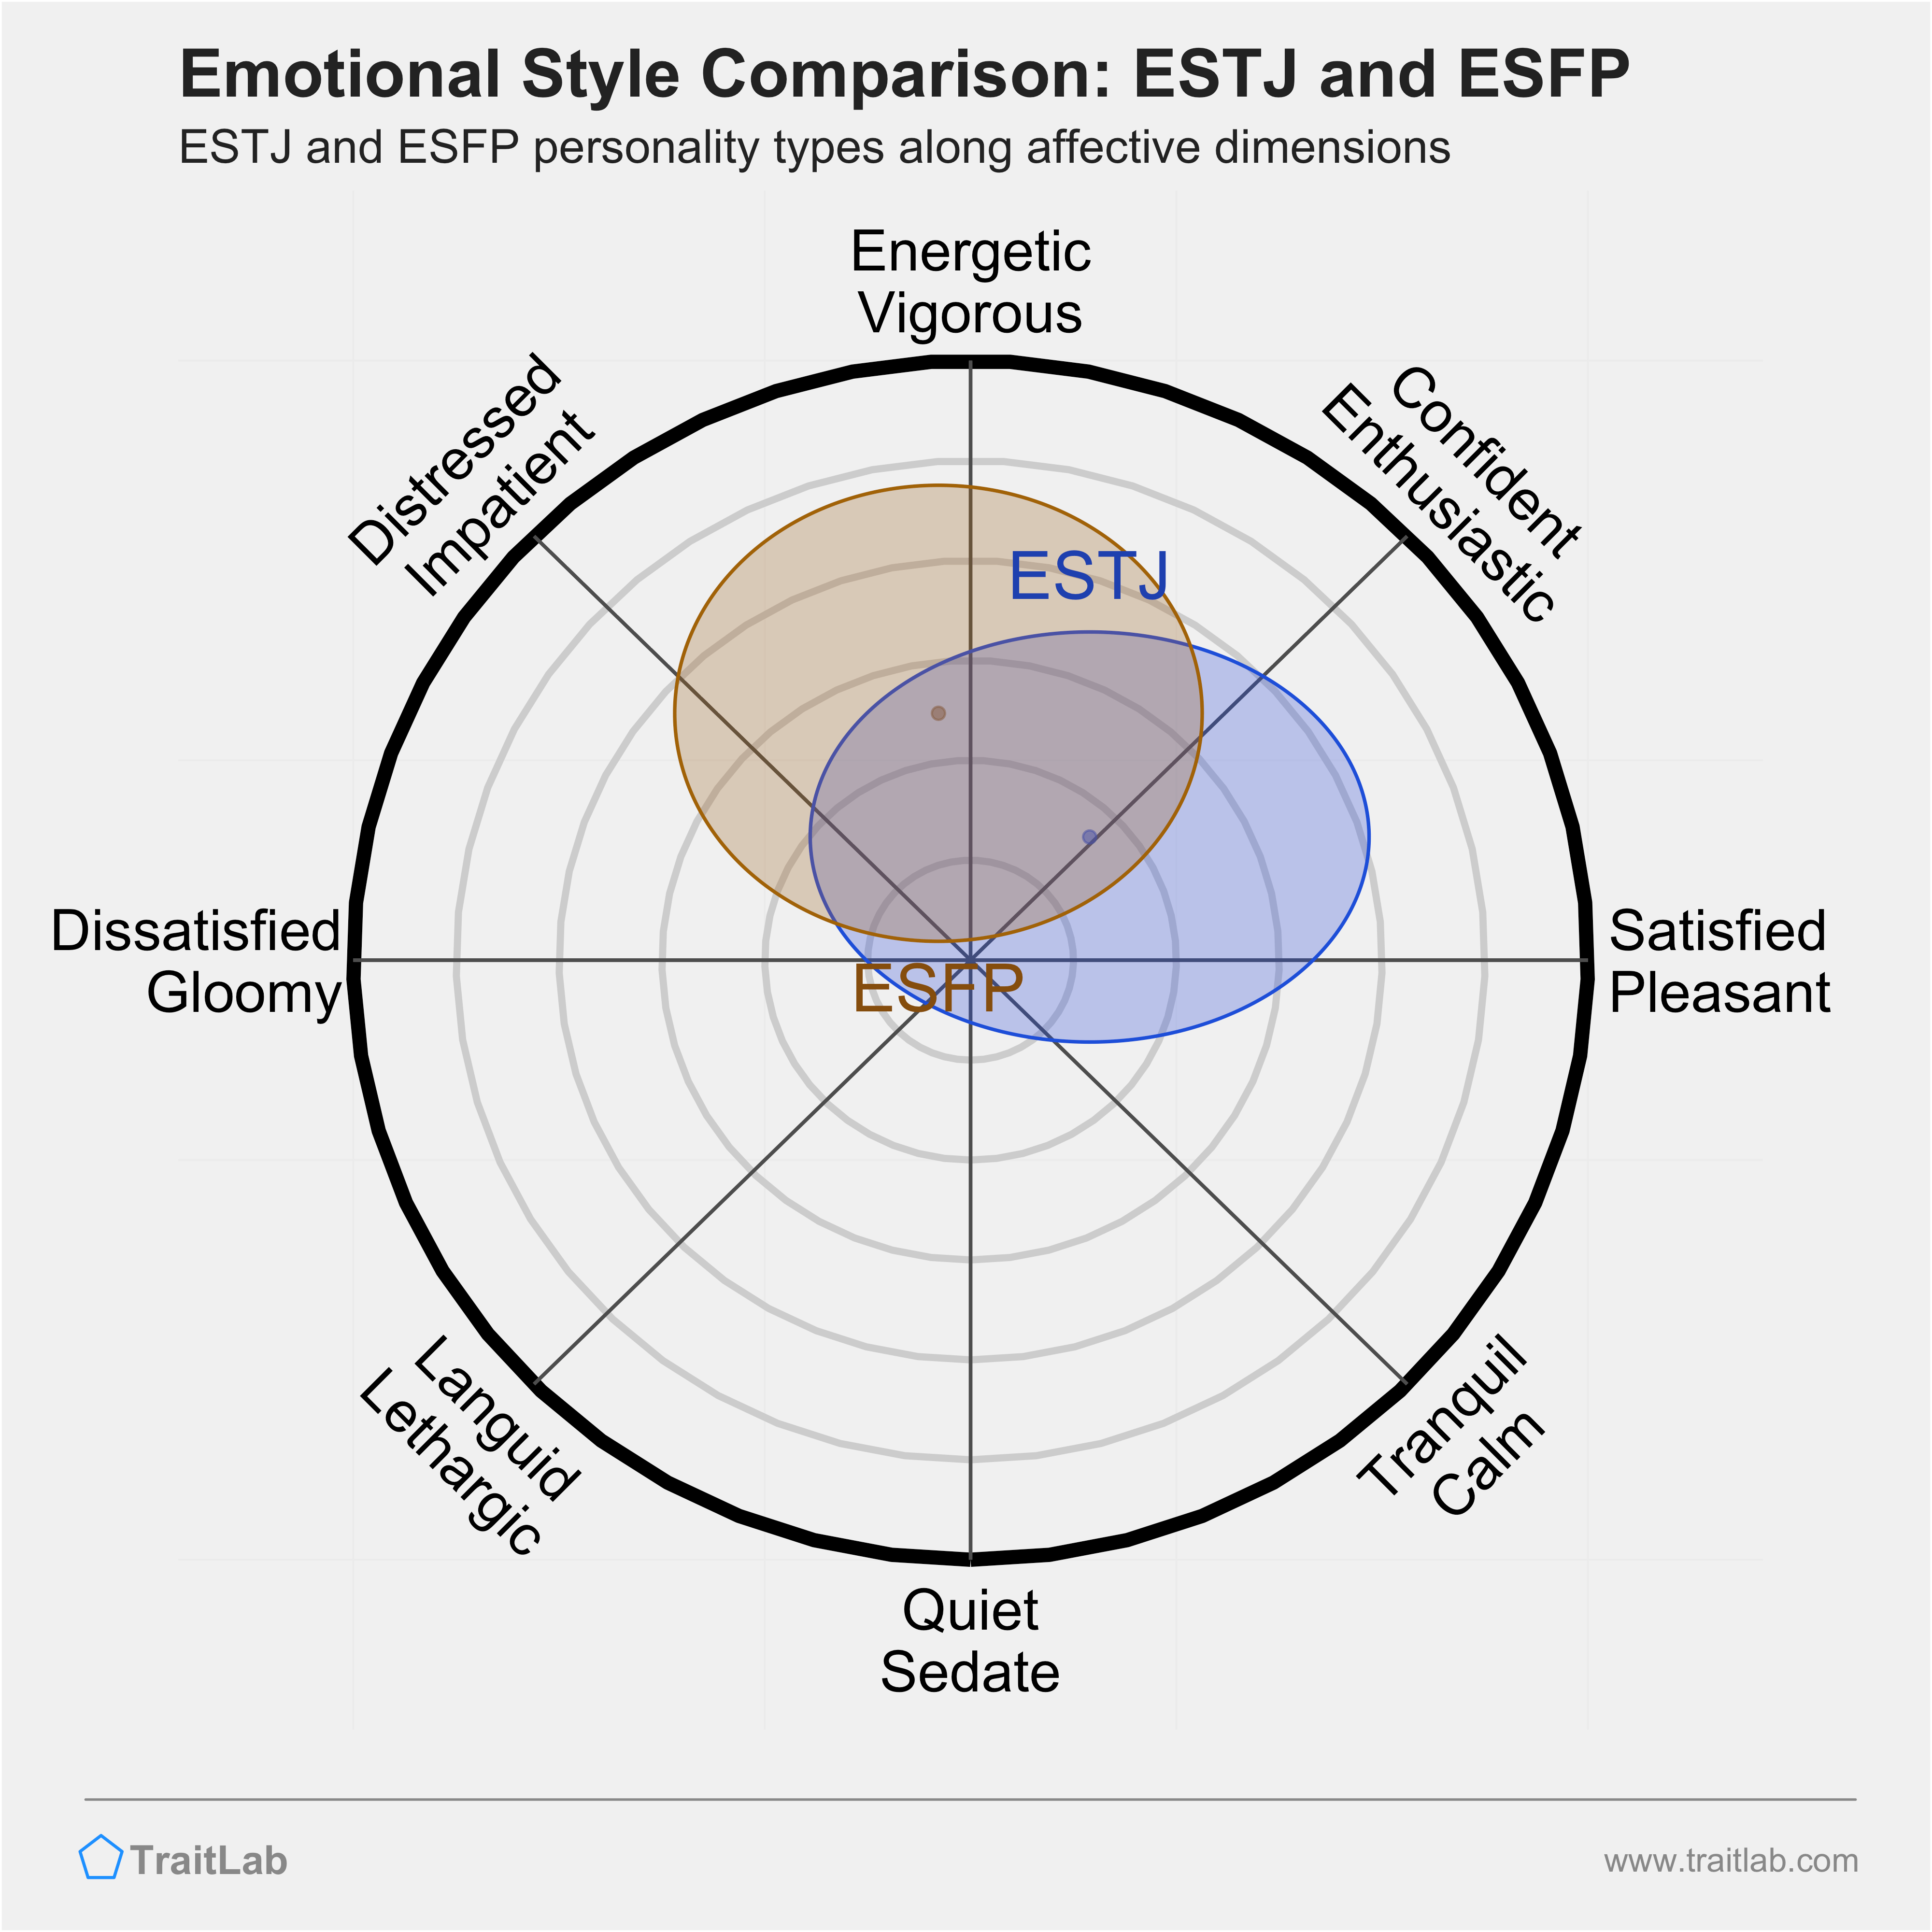 ESTJ and ESFP comparison across emotional (affective) dimensions